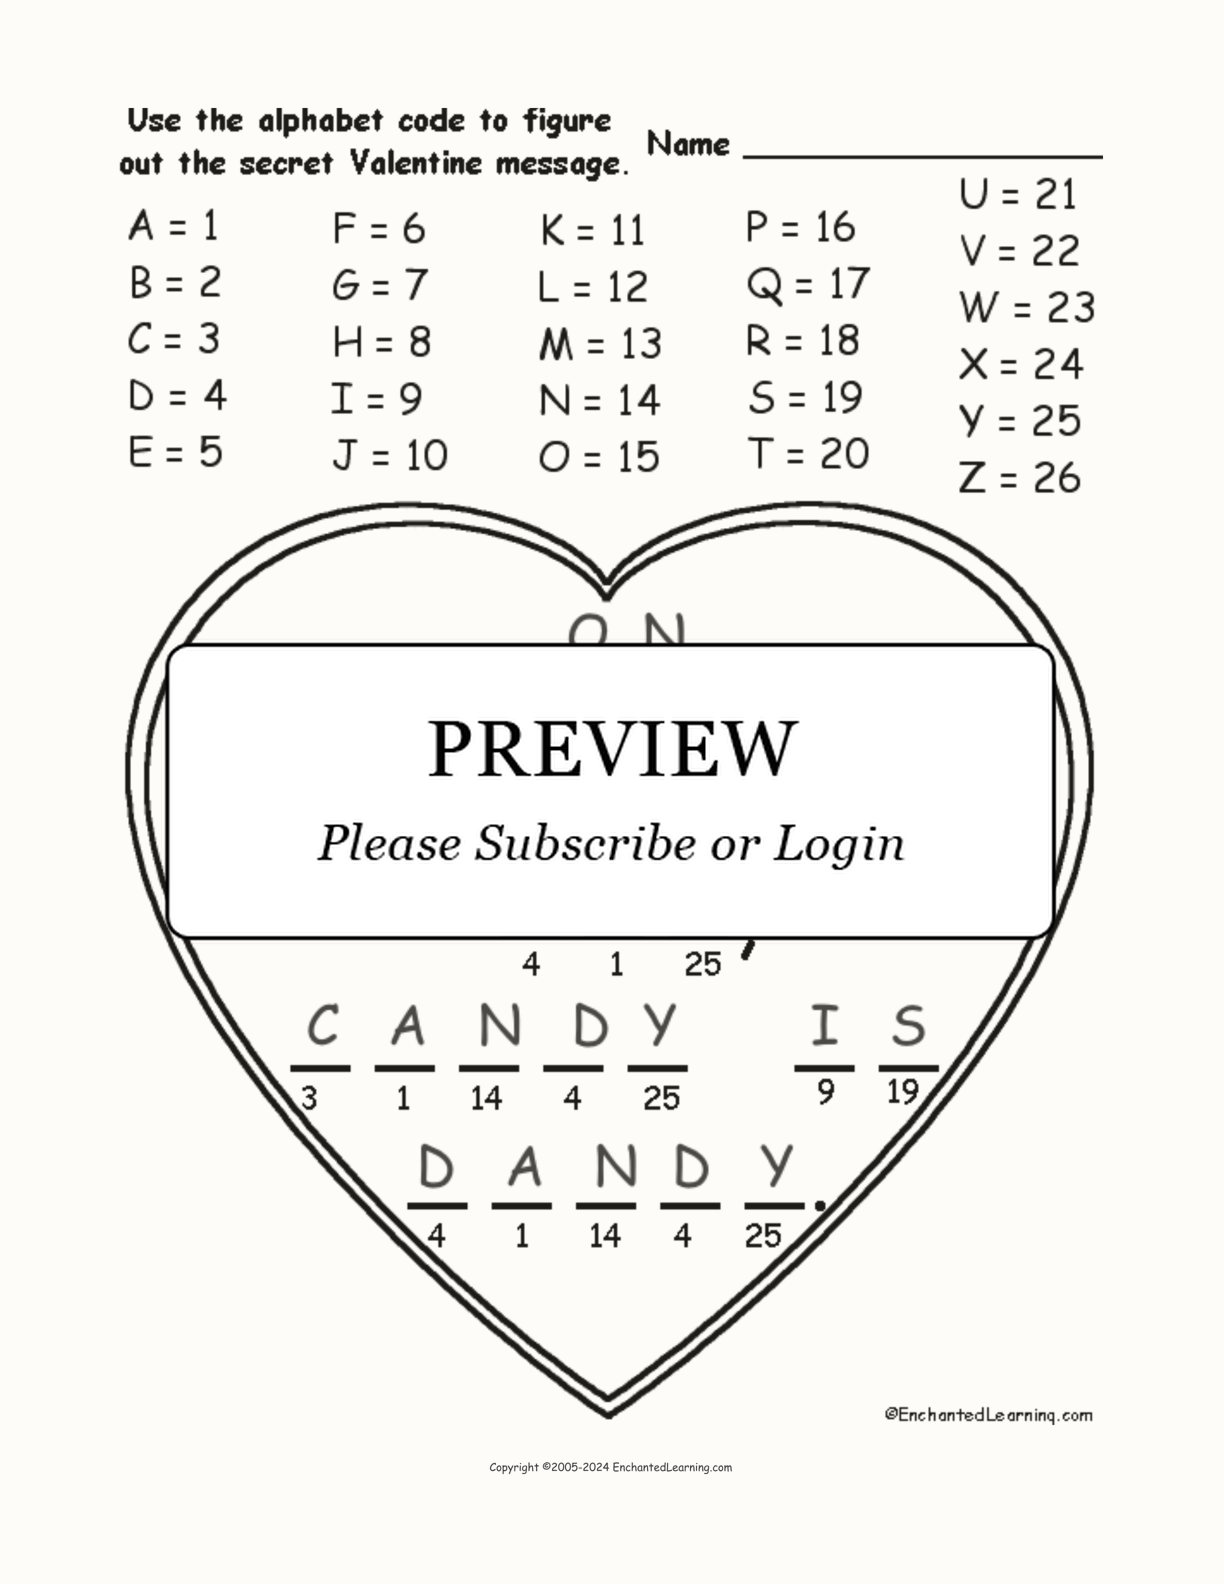 Valentine Alphabet Code interactive worksheet page 2